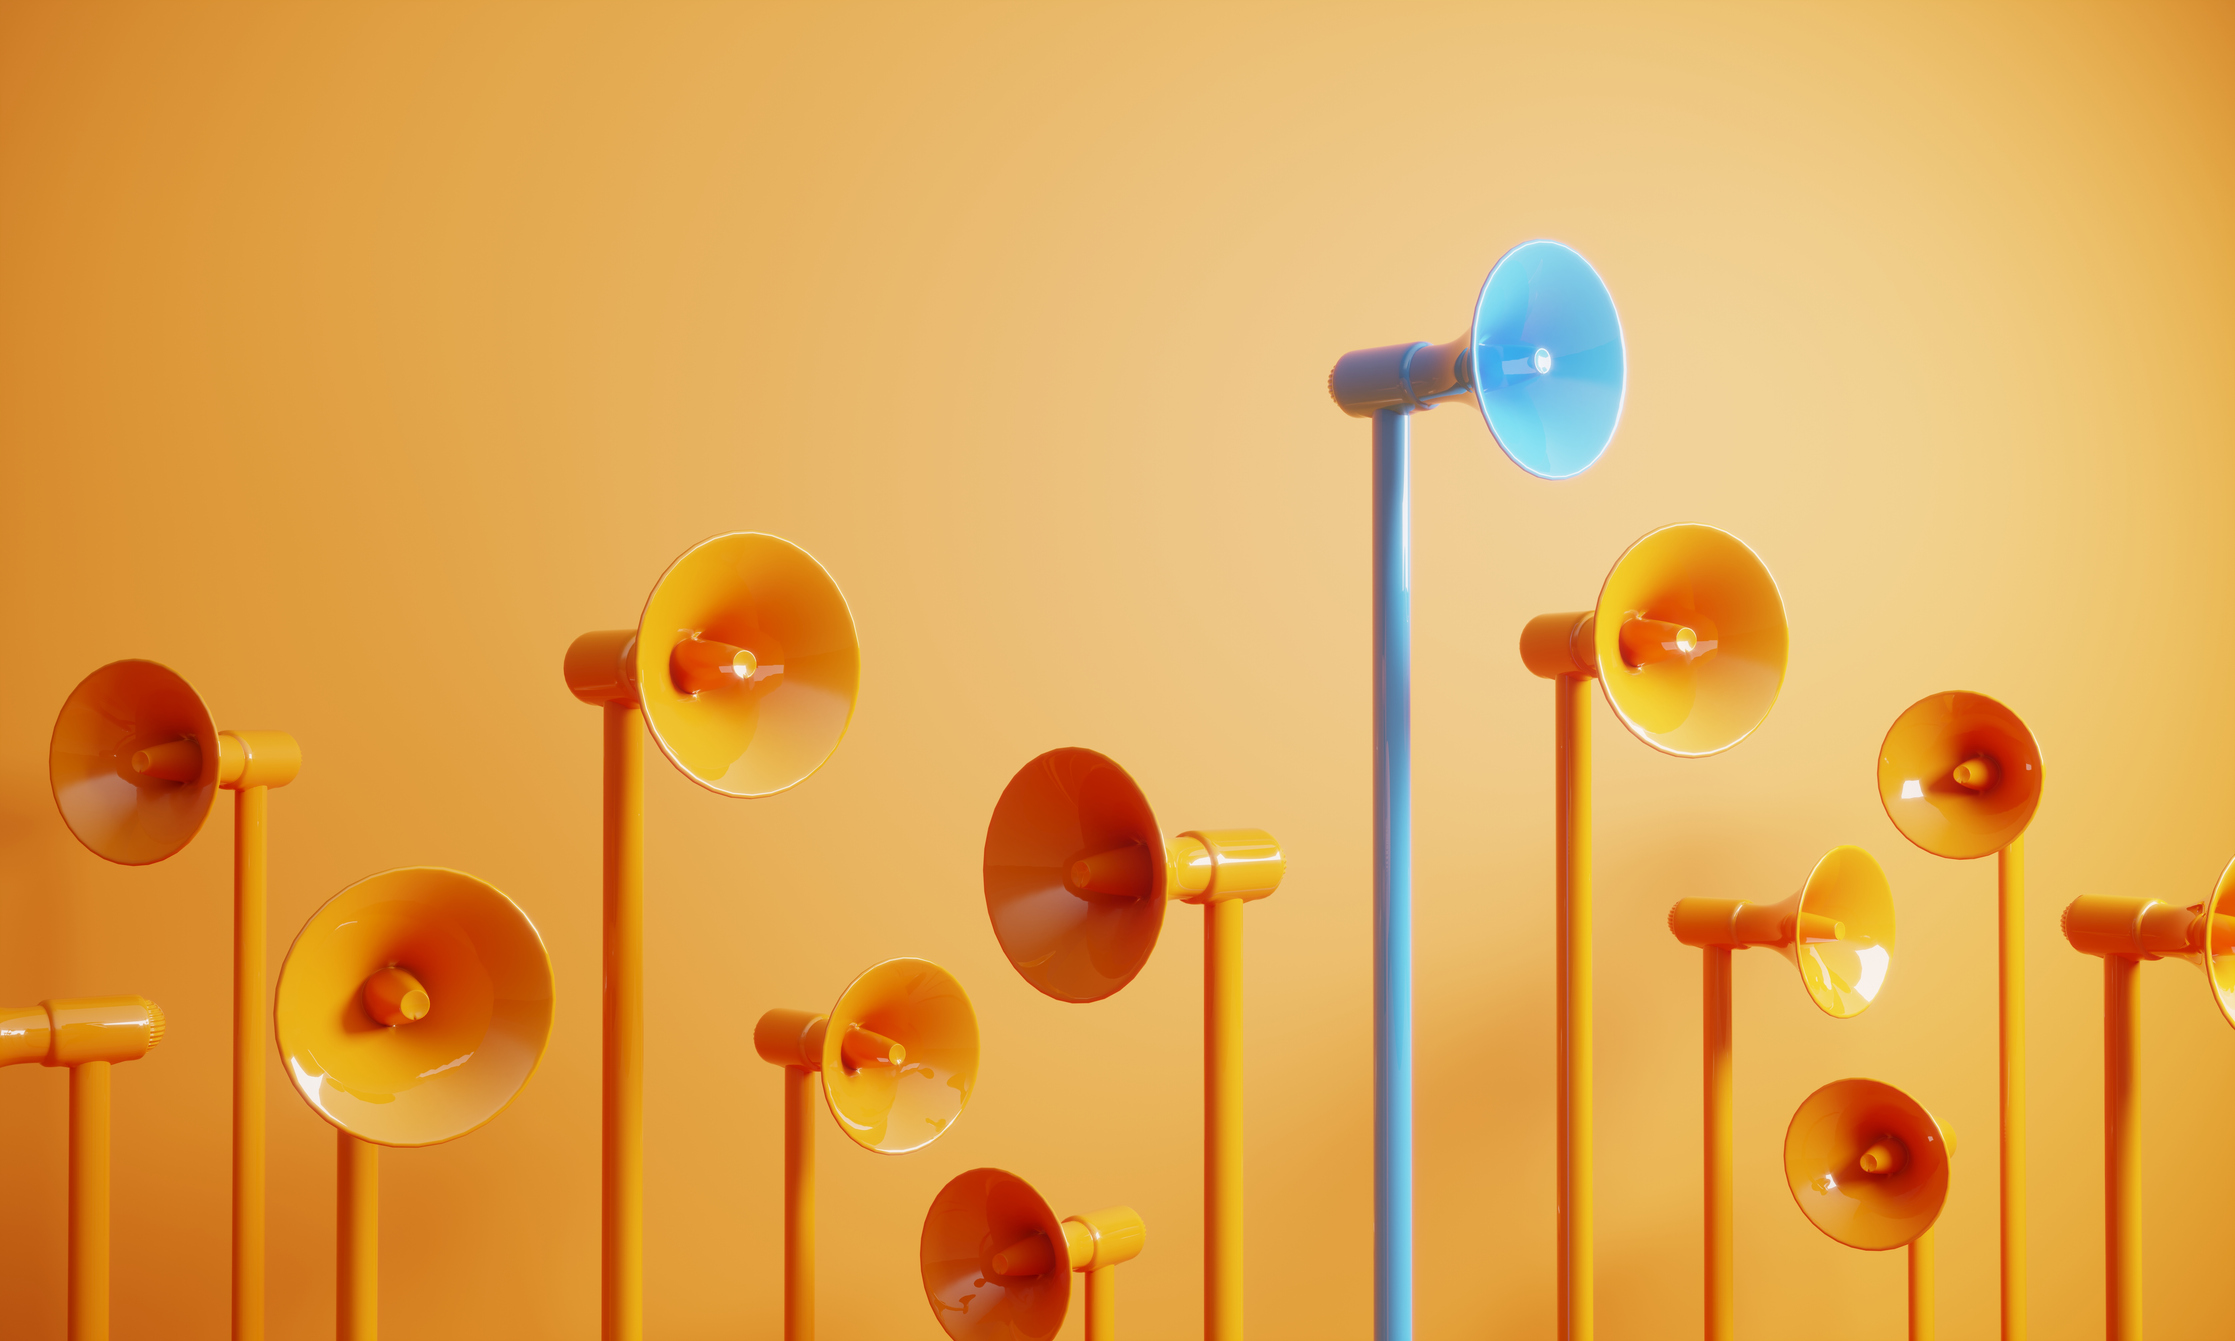 Blue megaphones transmit a message above the shorter orange megaphones.